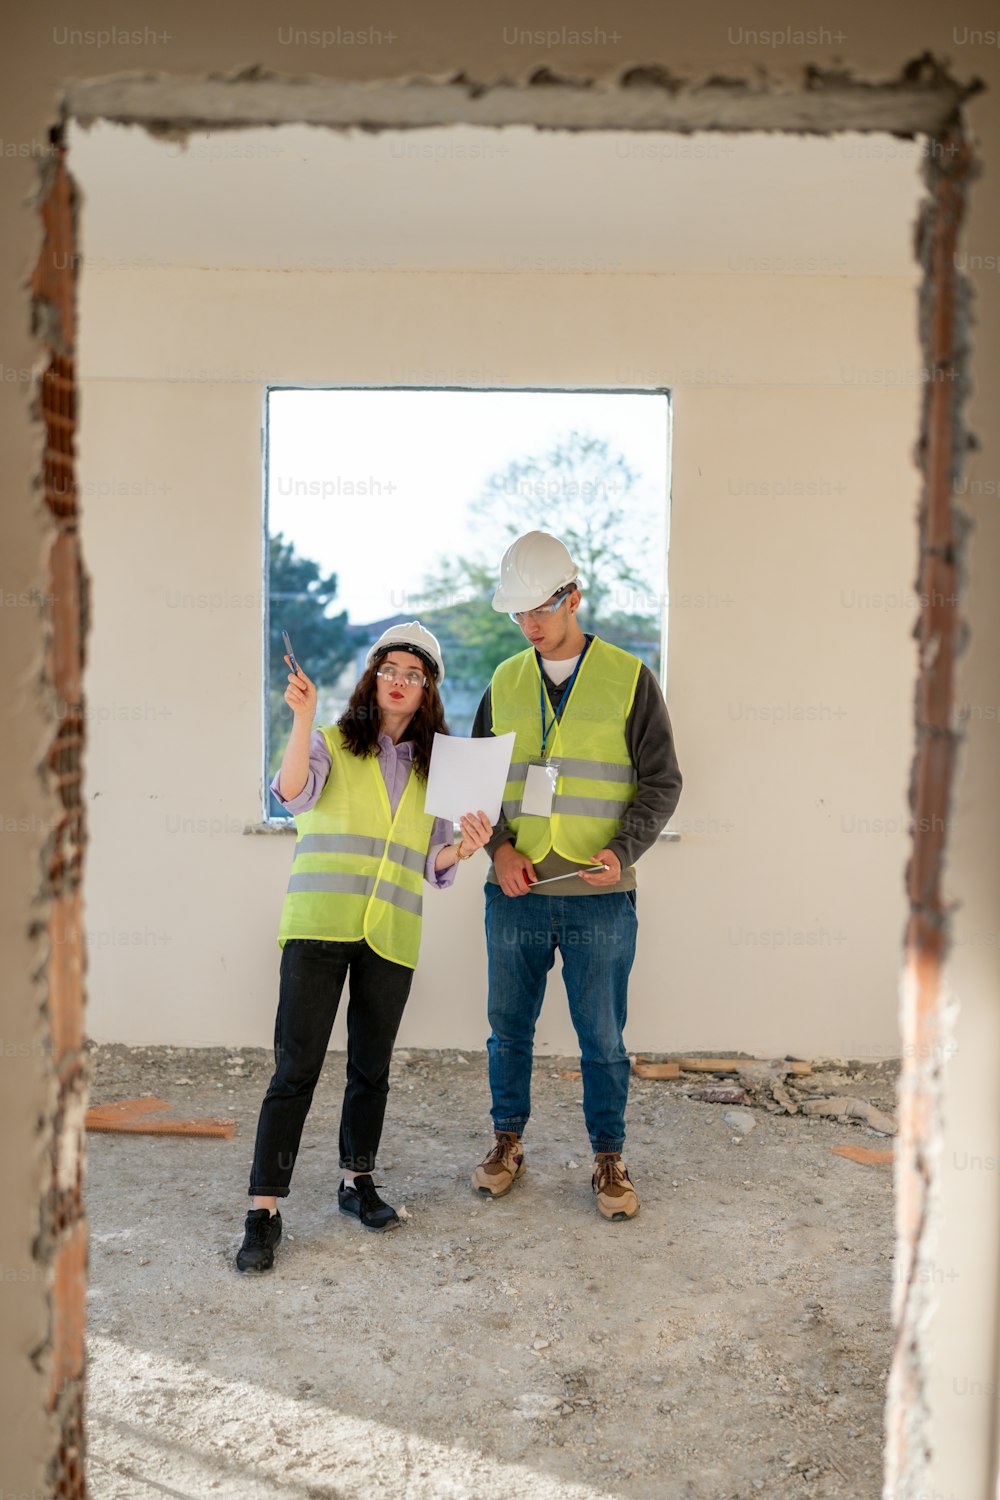 Un hombre y una mujer parados en una habitación en construcción